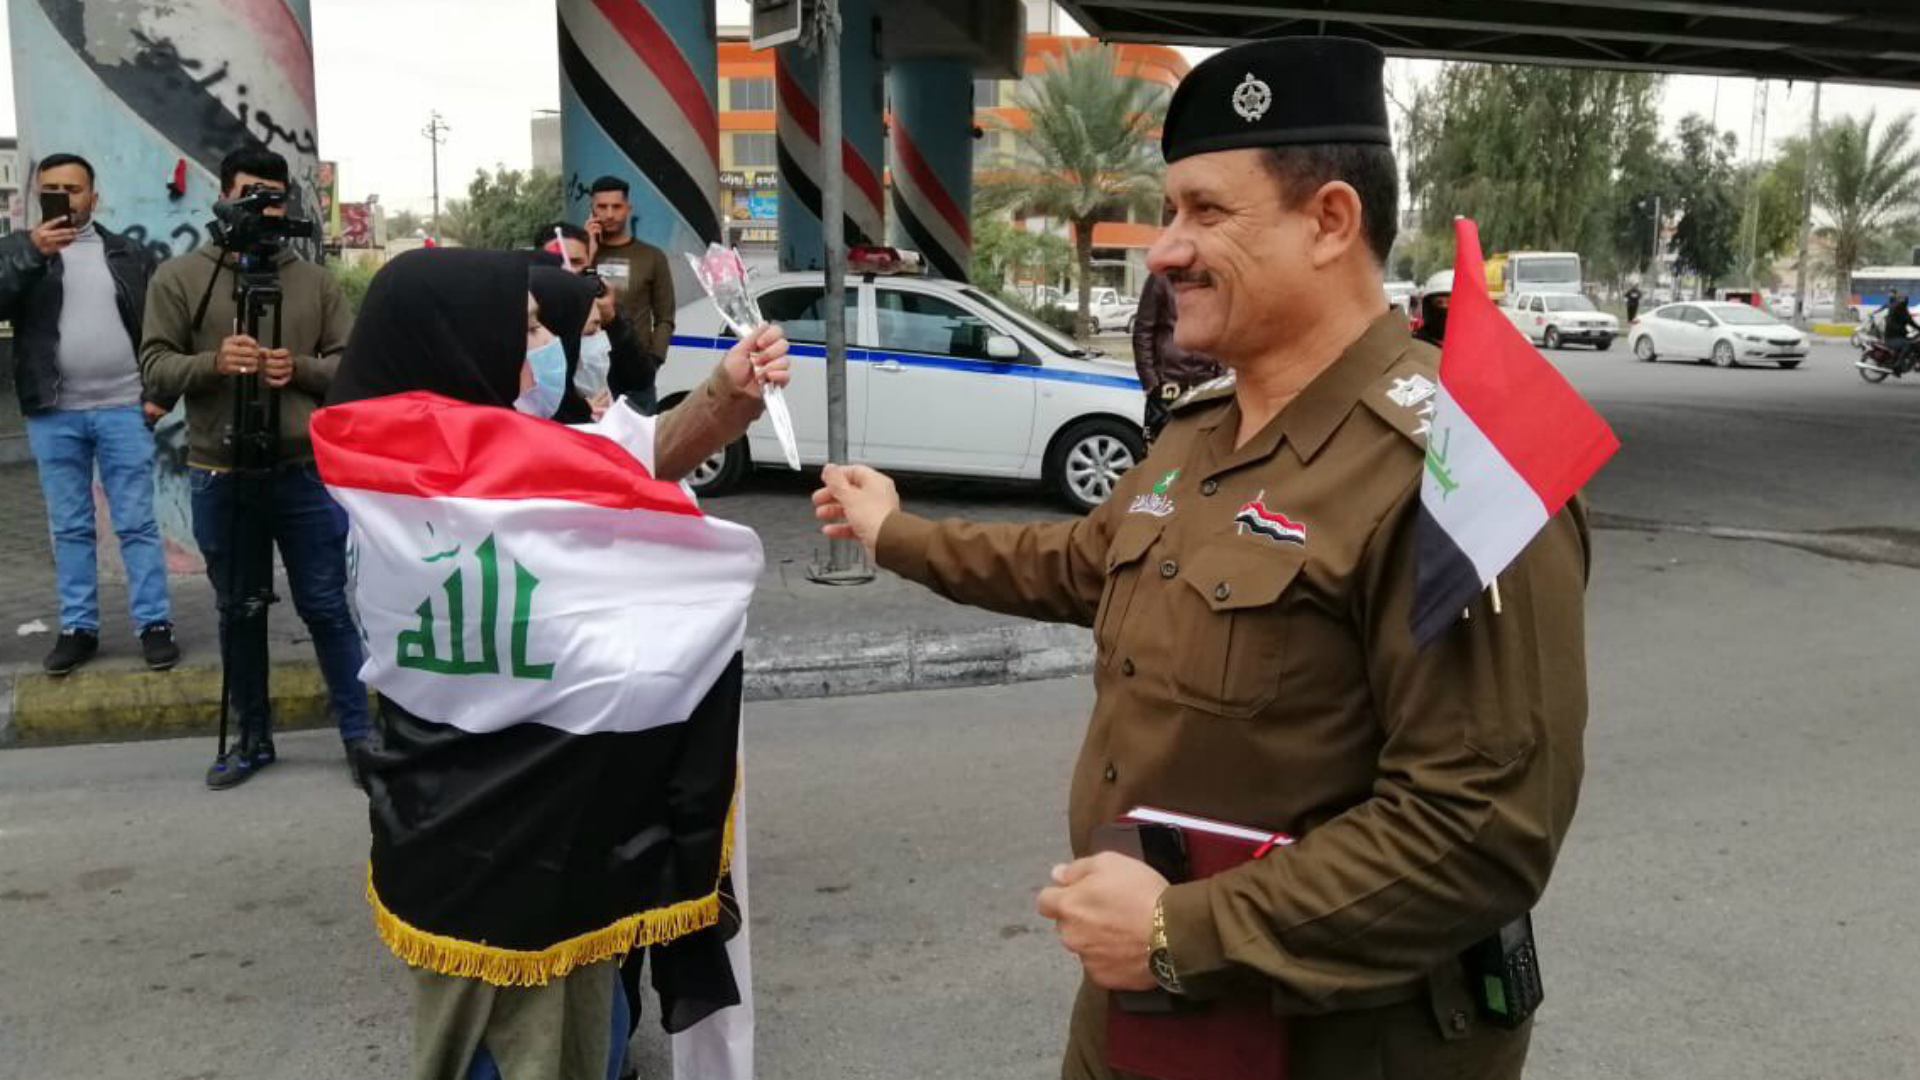 القوات الأمنية توزع الورد والأعلام على المتظاهرين في كربلاء